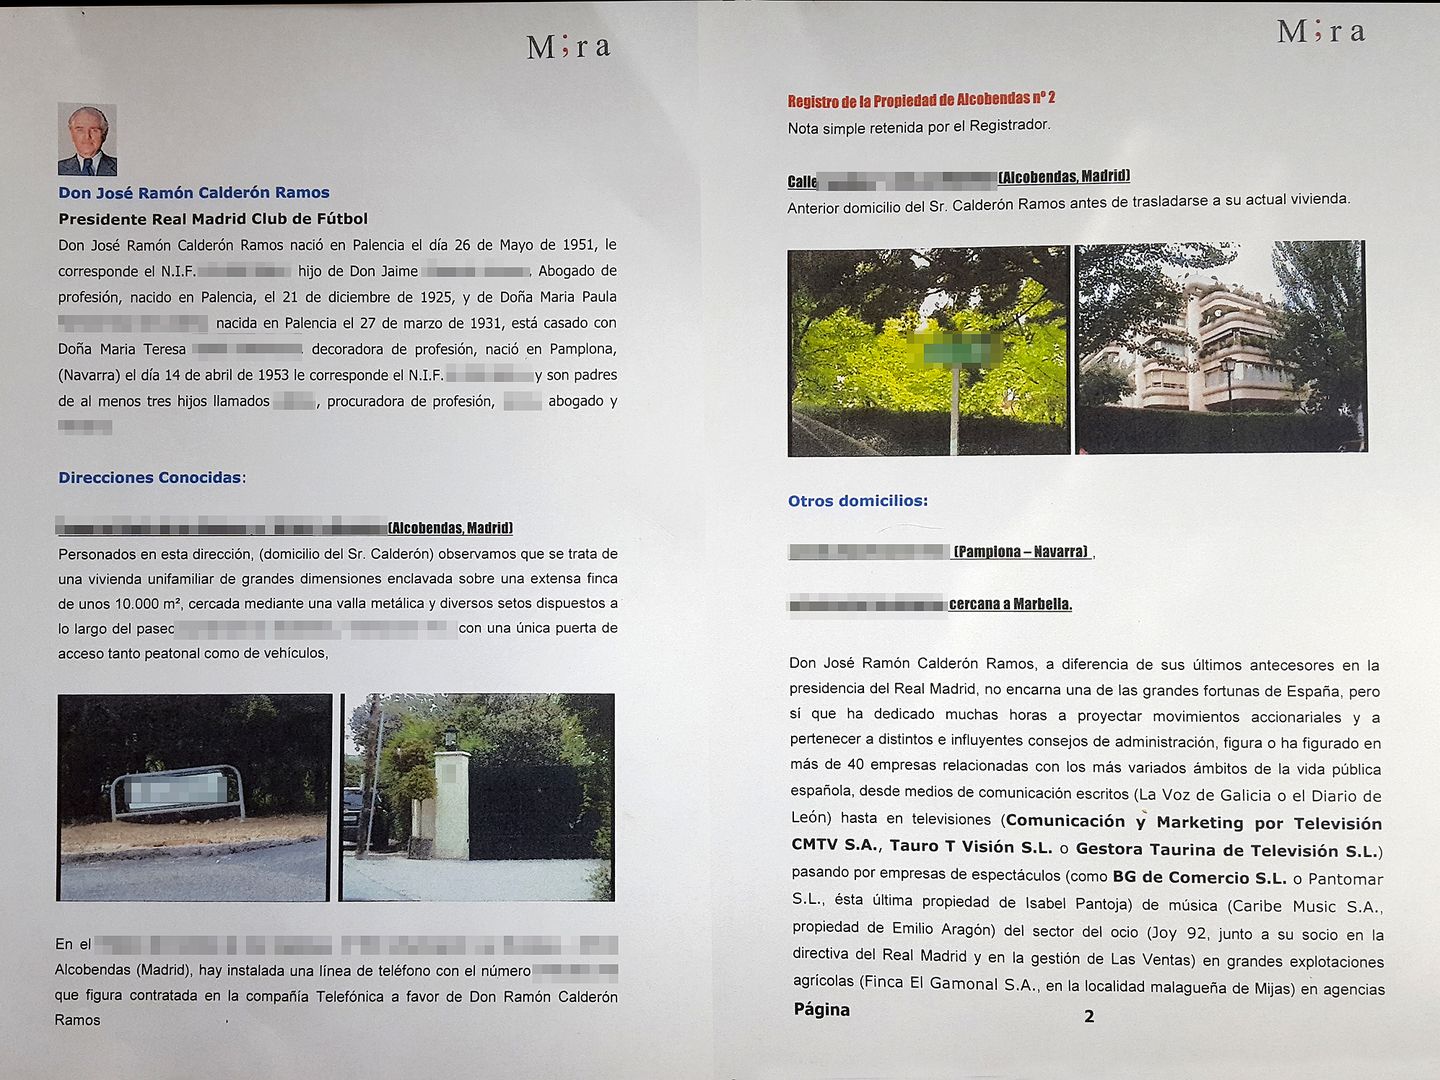  Las primeras páginas del dossier que la agencia de detectives Mira elaboró sobre Ramón Calderón